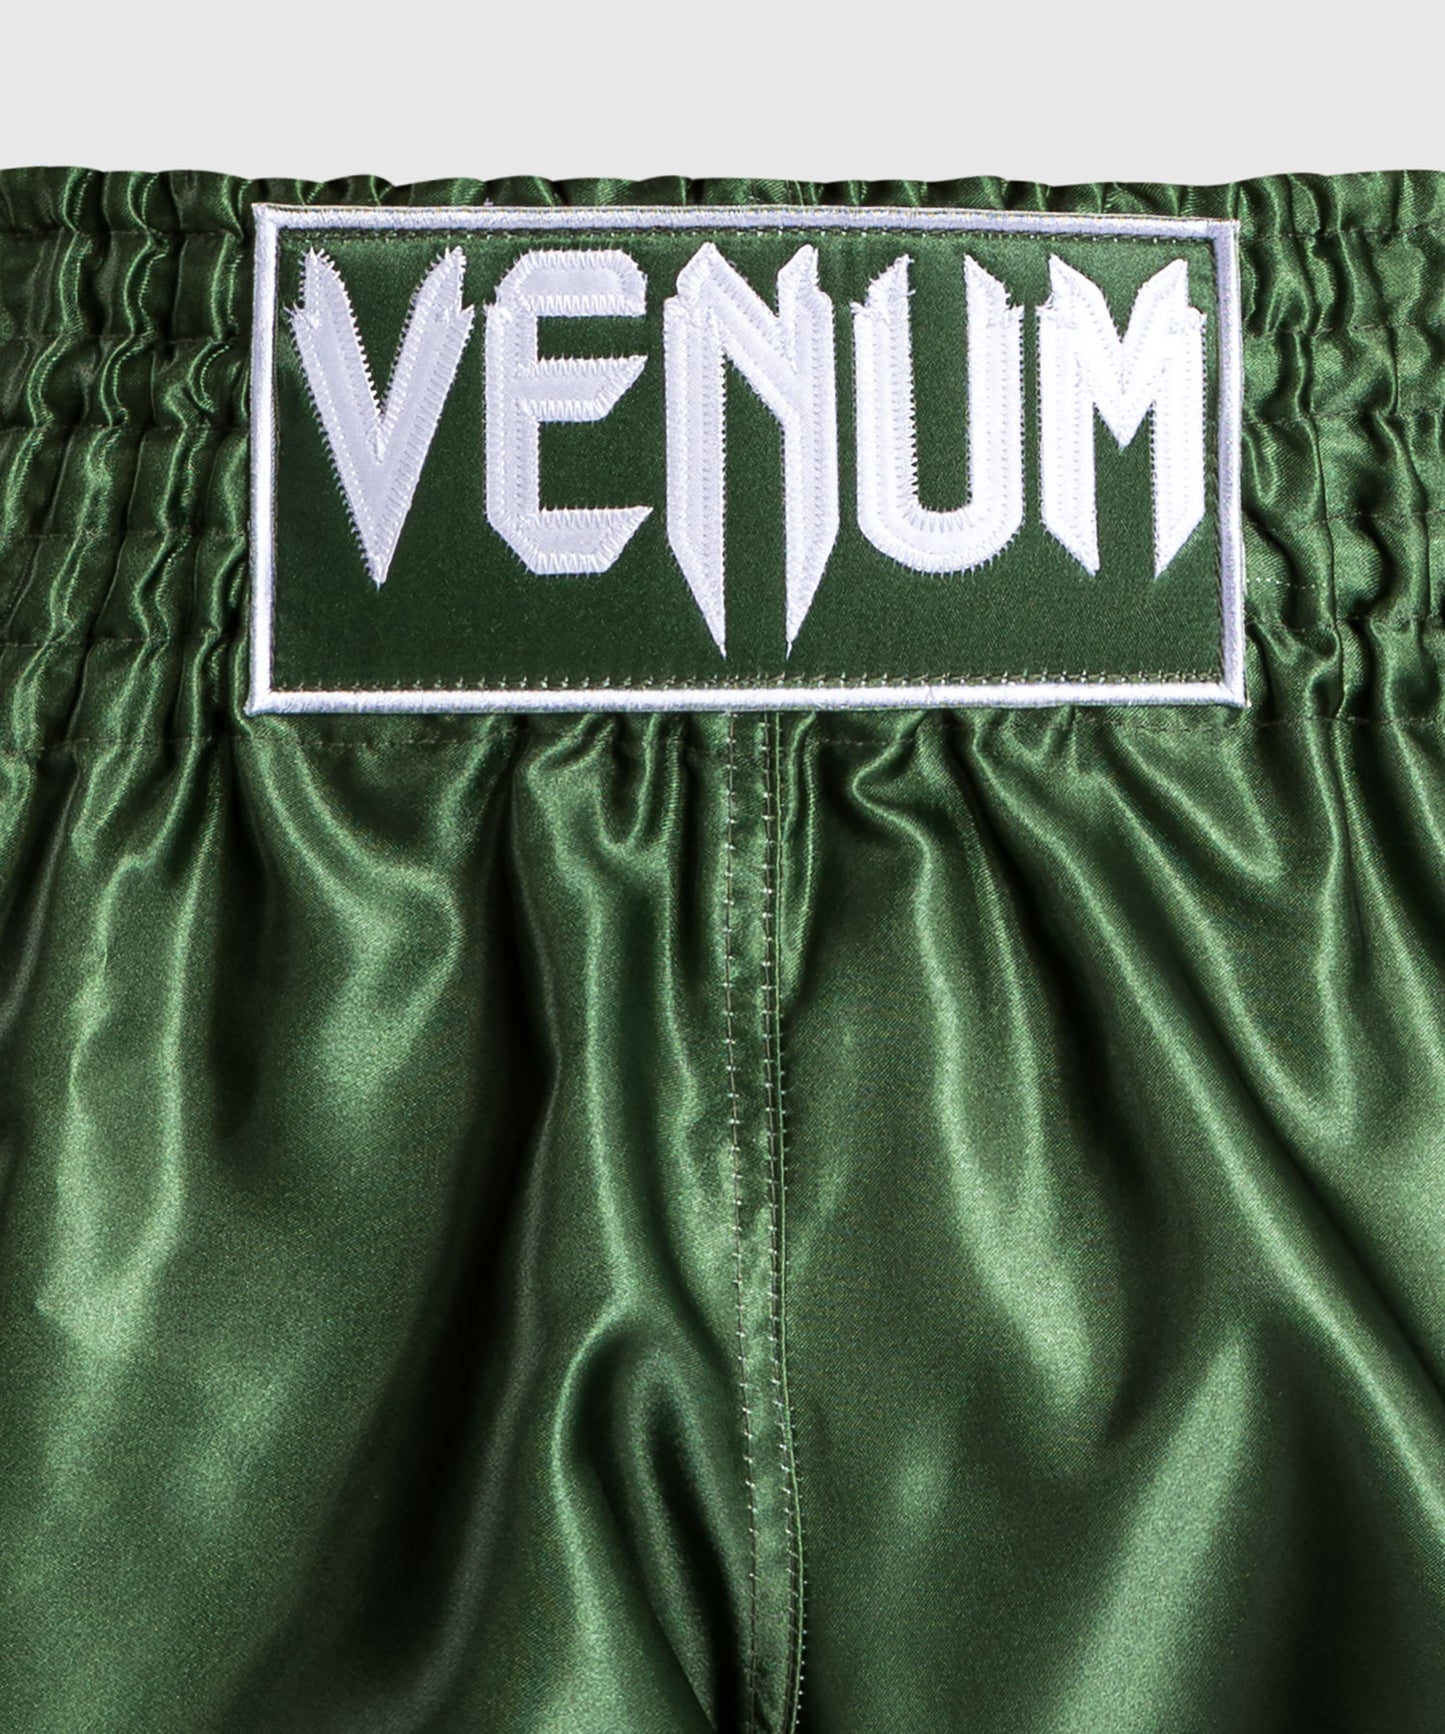 Venum Classic Muay Thai Short Caqui/Blanco